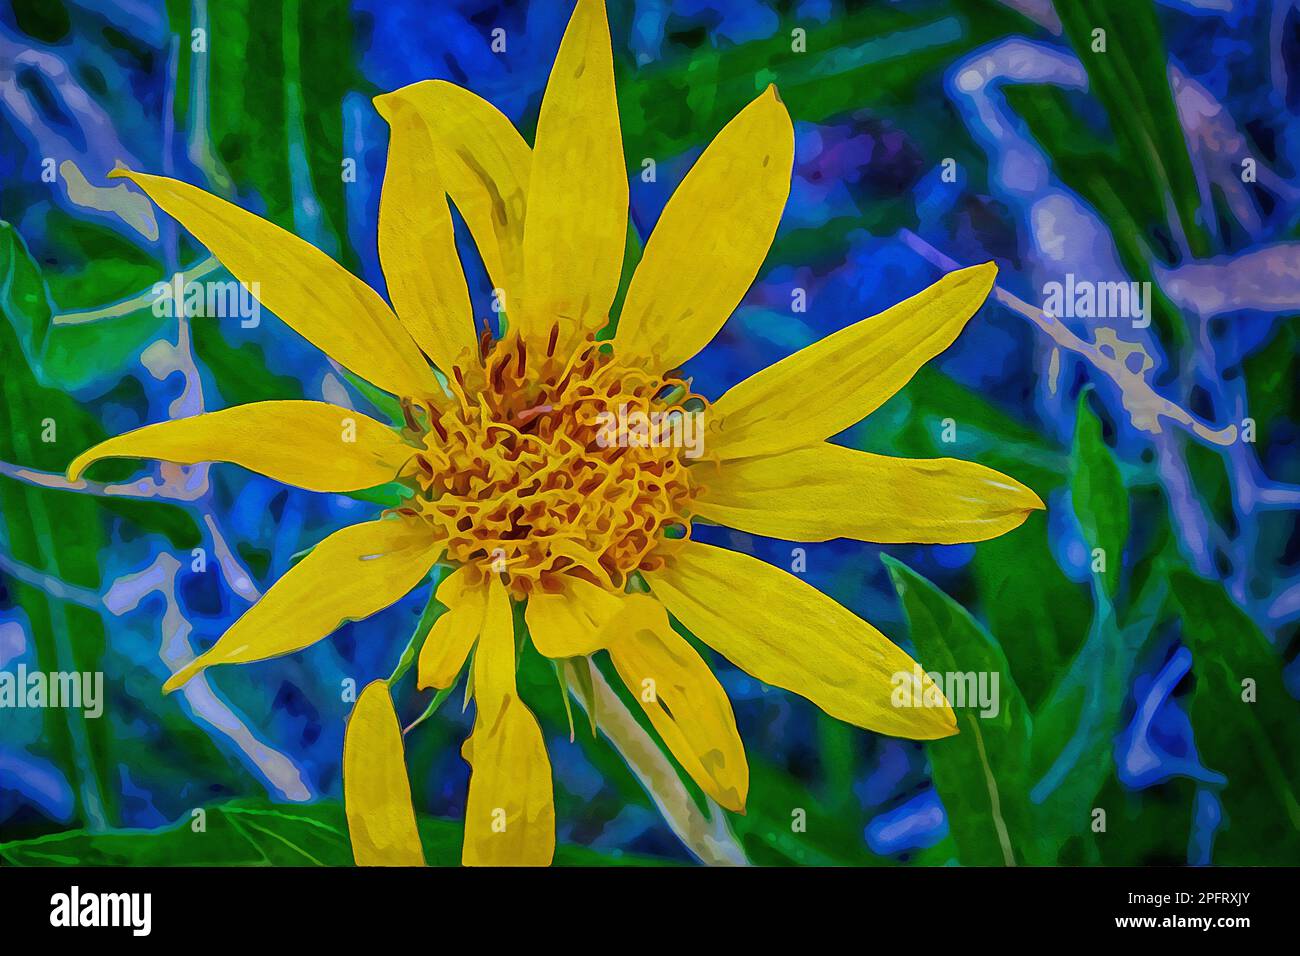 Un dipinto digitale ad acquerello con piccoli fiori a margherita con petali lunghi e sottili in tonalità oro e marrone Foto Stock